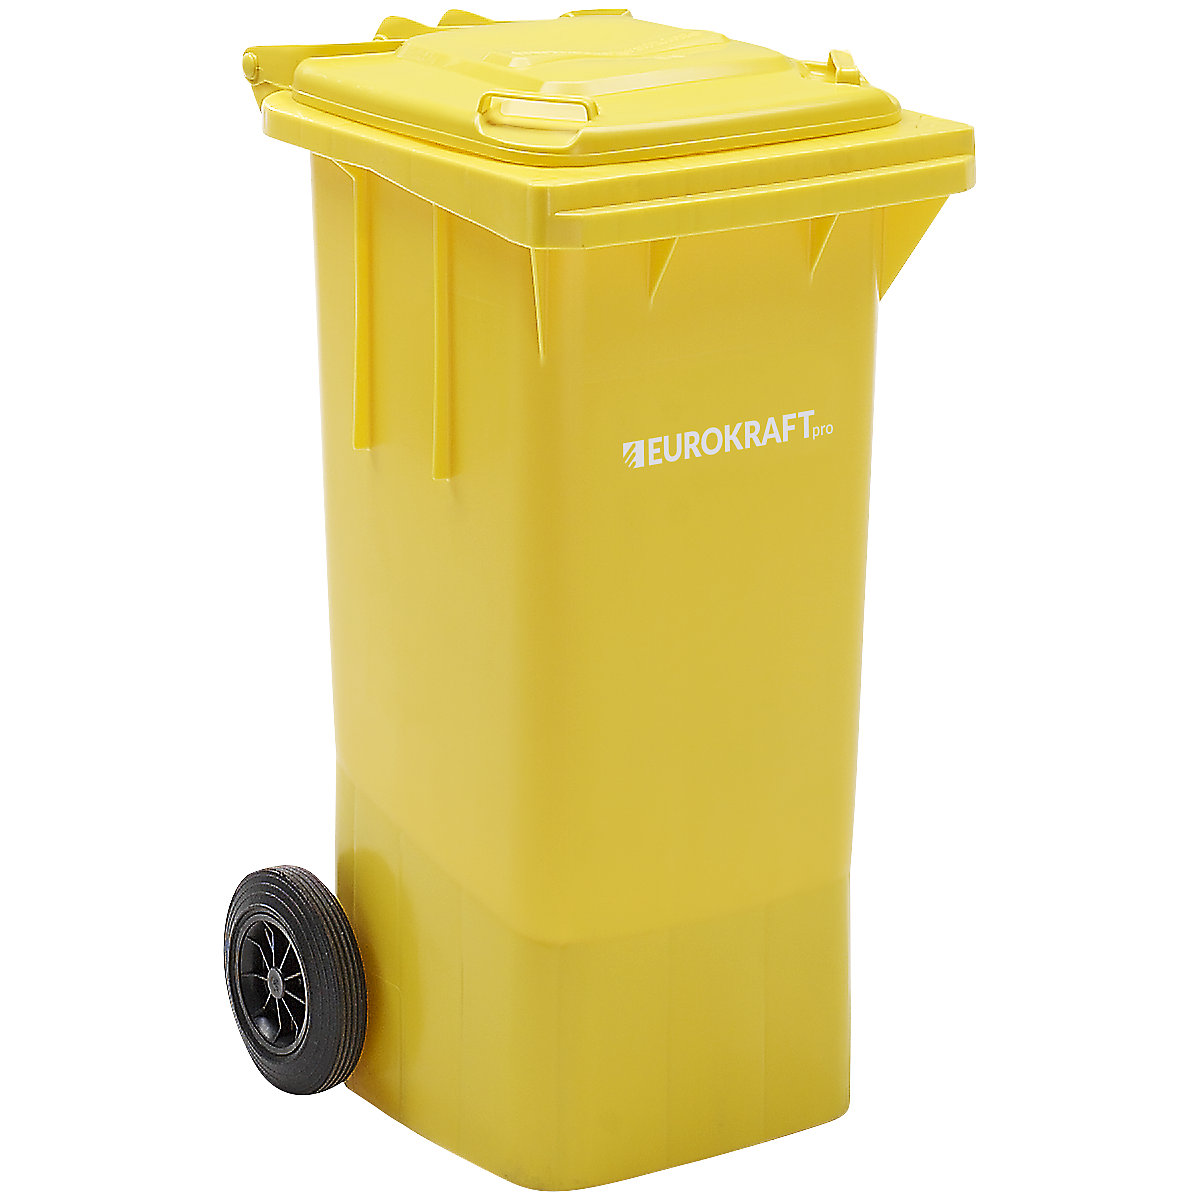 Contentor de lixo em plástico DIN EN 840 – eurokraft pro (Imagem do produto 11)-10